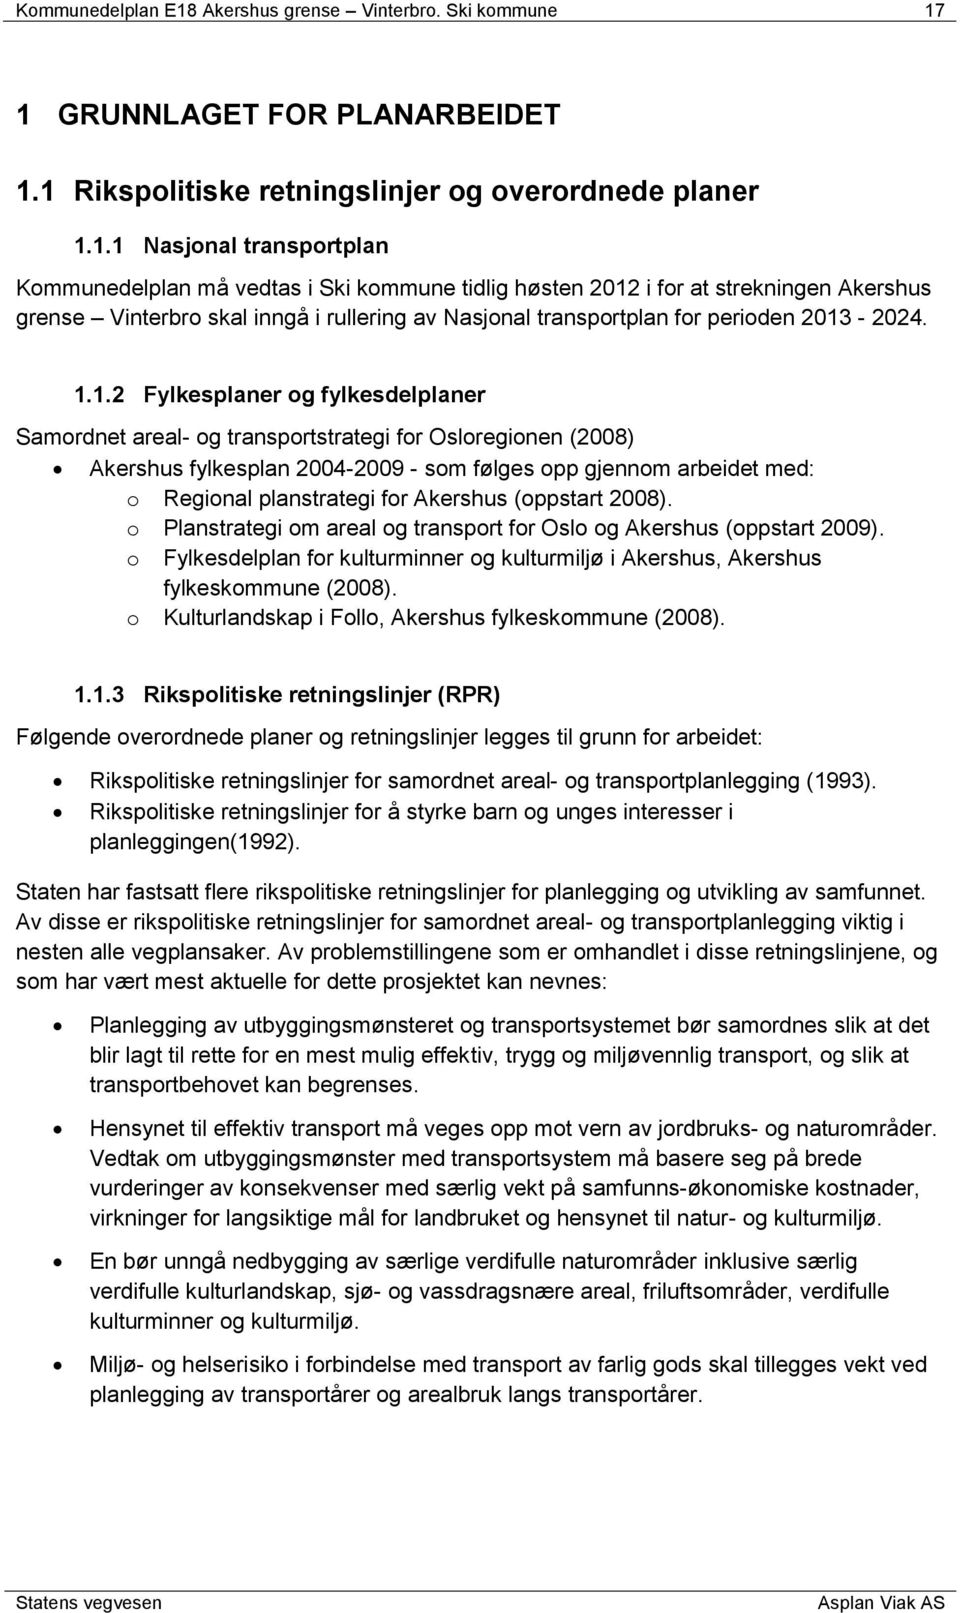 1 GRUNNLAGT FOR PLANARBIT 1.1 Rikspolitiske retningslinjer og overordnede planer 1.1.1 Nasjonal transportplan Kommunedelplan må vedtas i Ski kommune tidlig høsten 2012 i for at strekningen Akershus